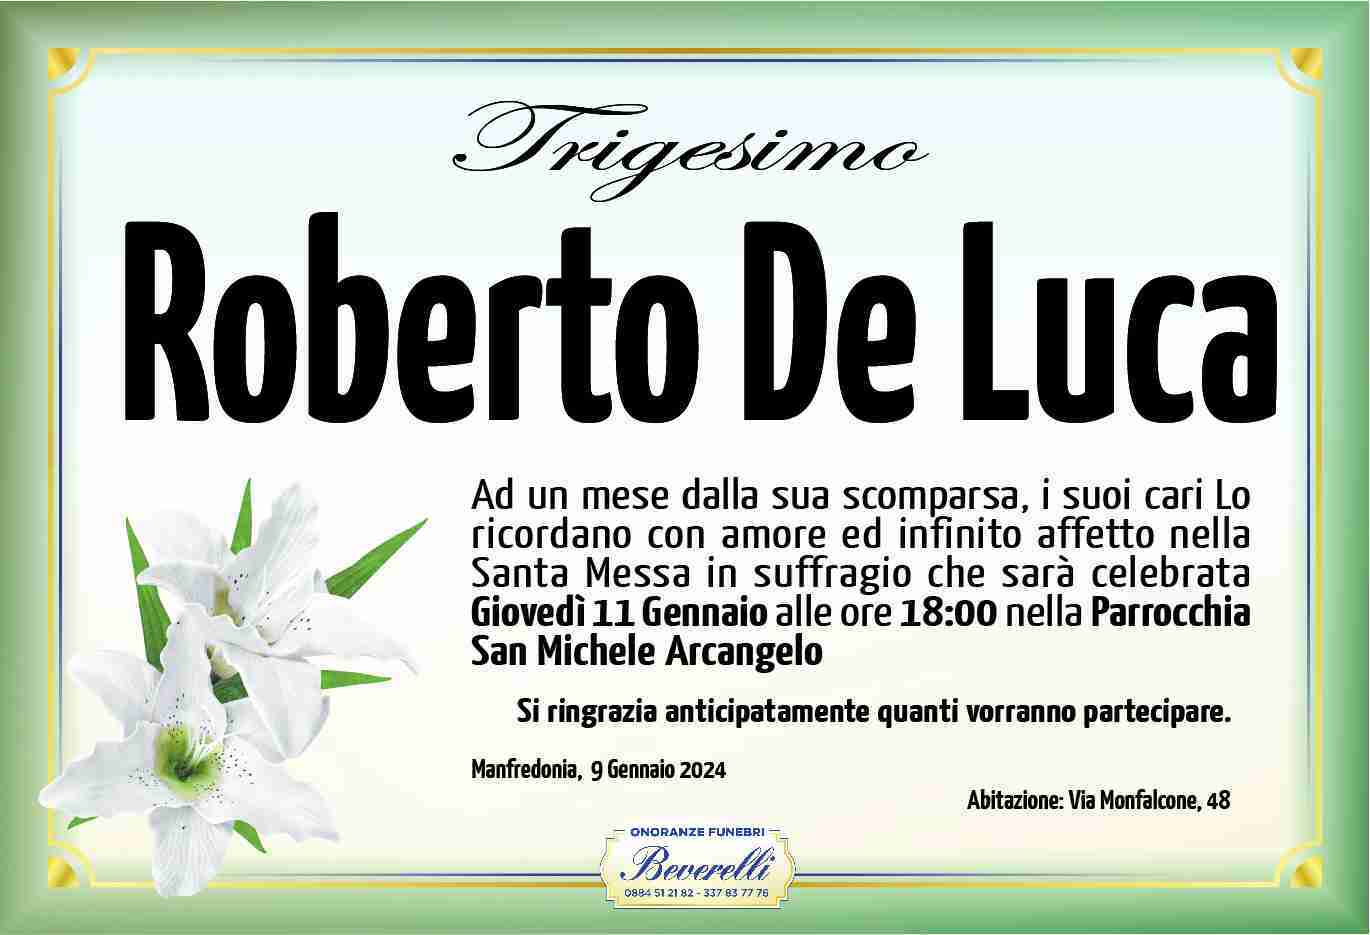 Roberto De Luca